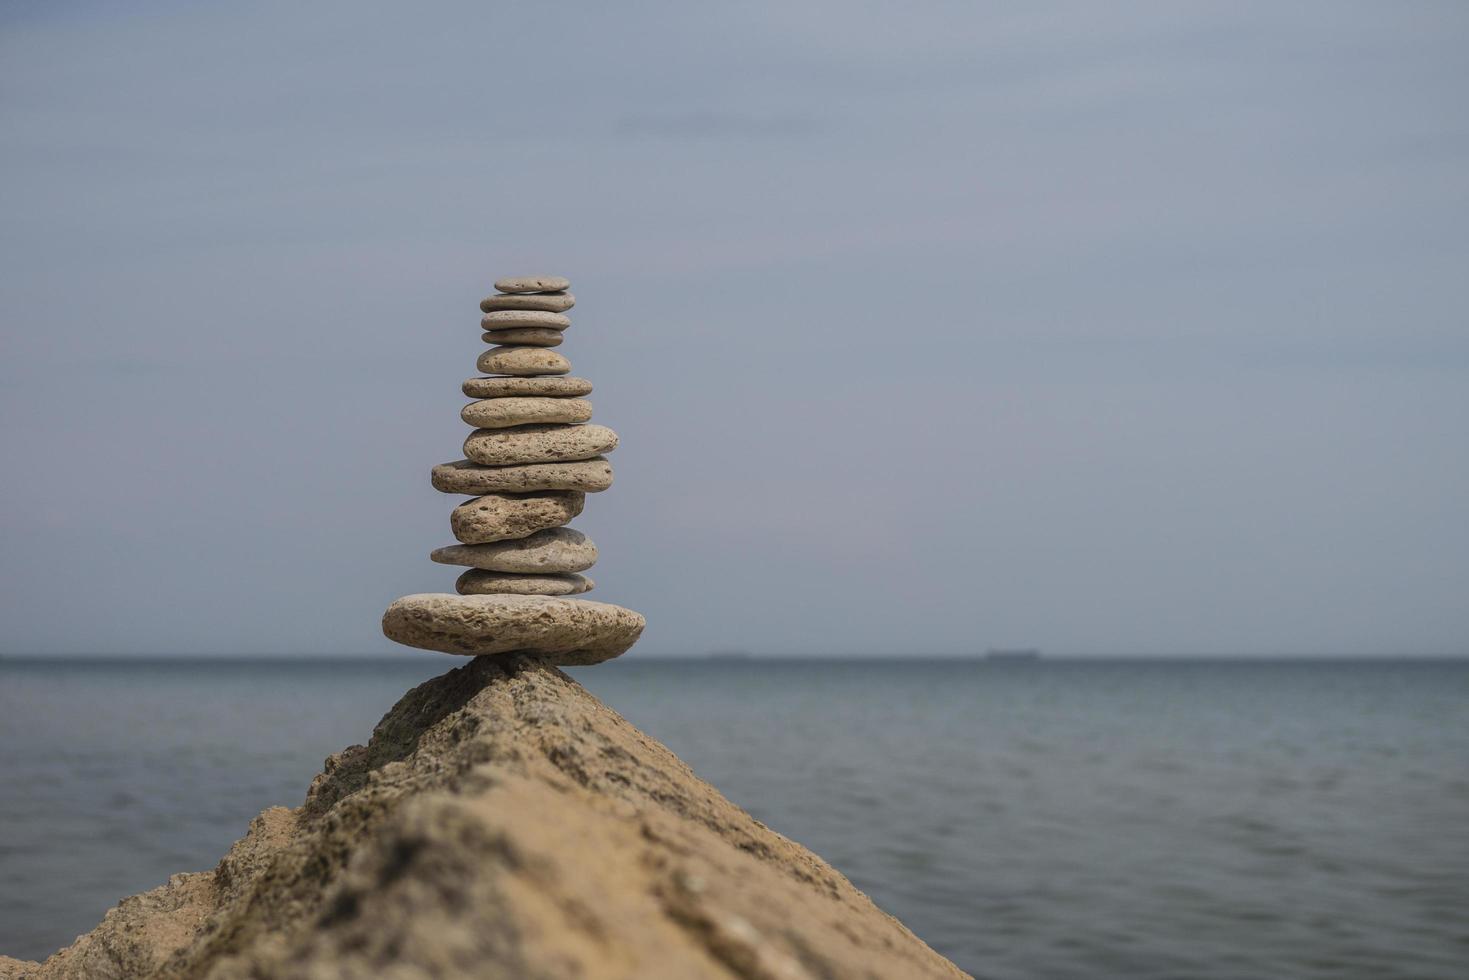 balancerende piramide van stenen op een grote steen aan de kust foto